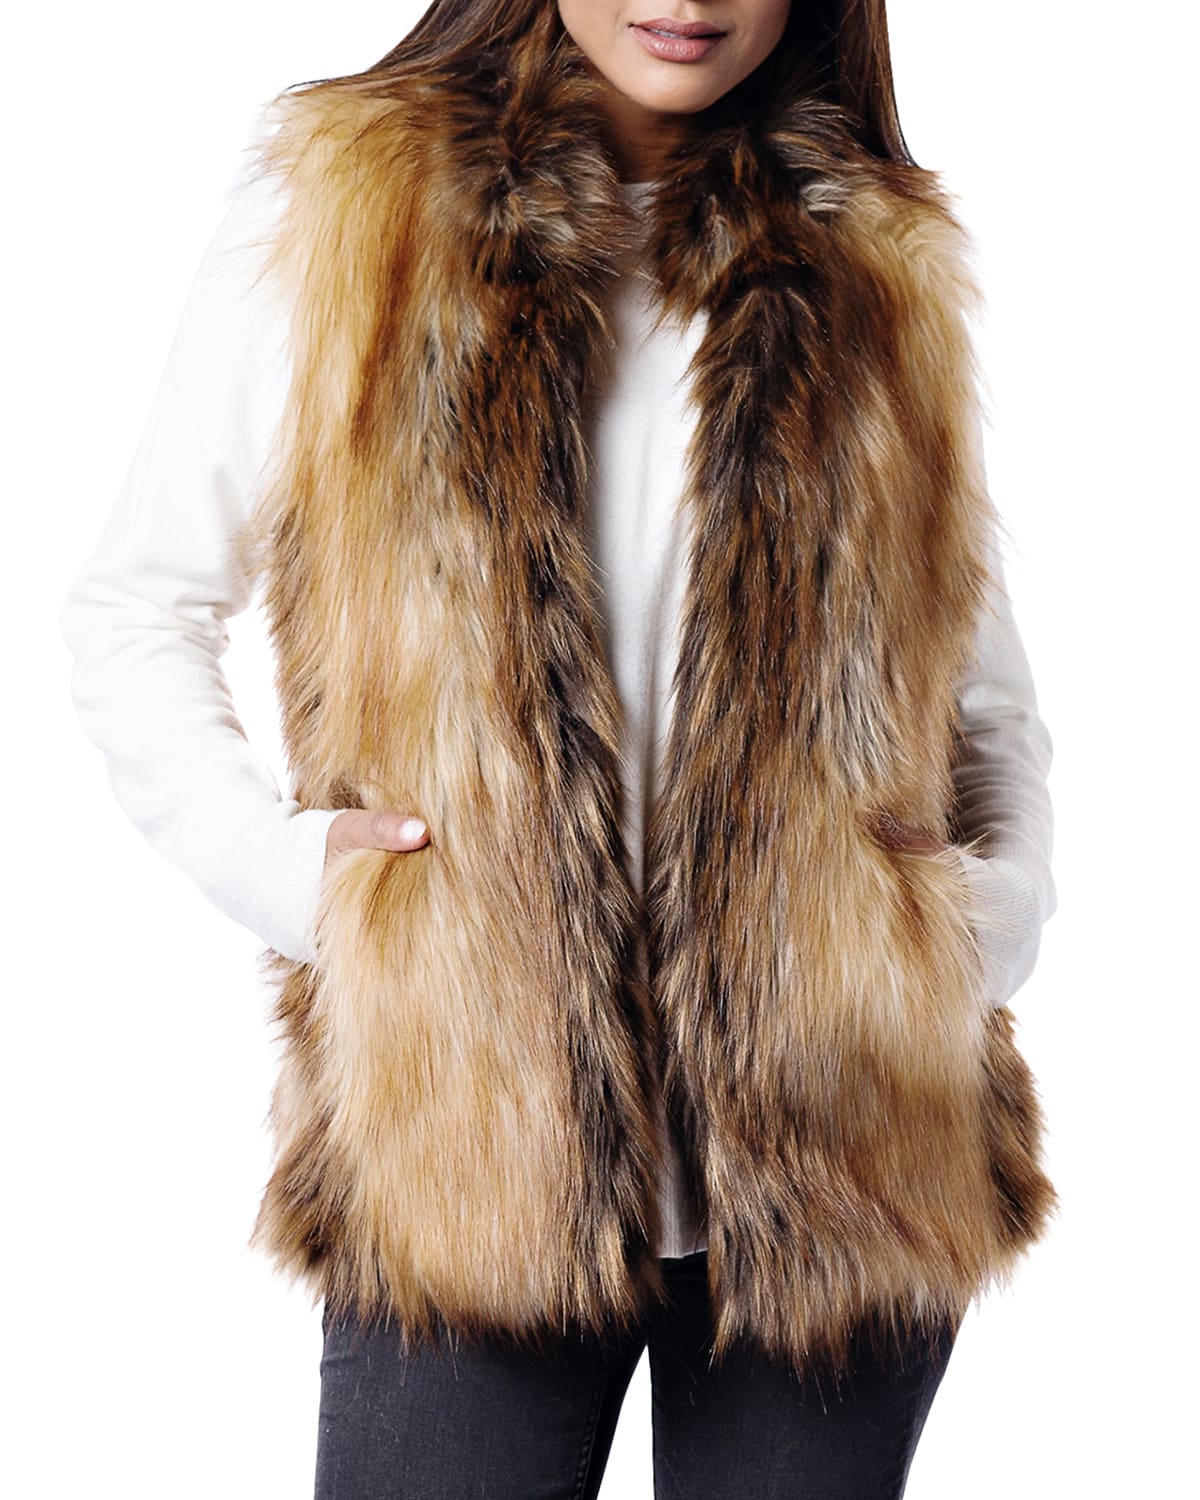 Fabulous Furs Limited Edition Faux-Fur Vest - Inclusive Sizing